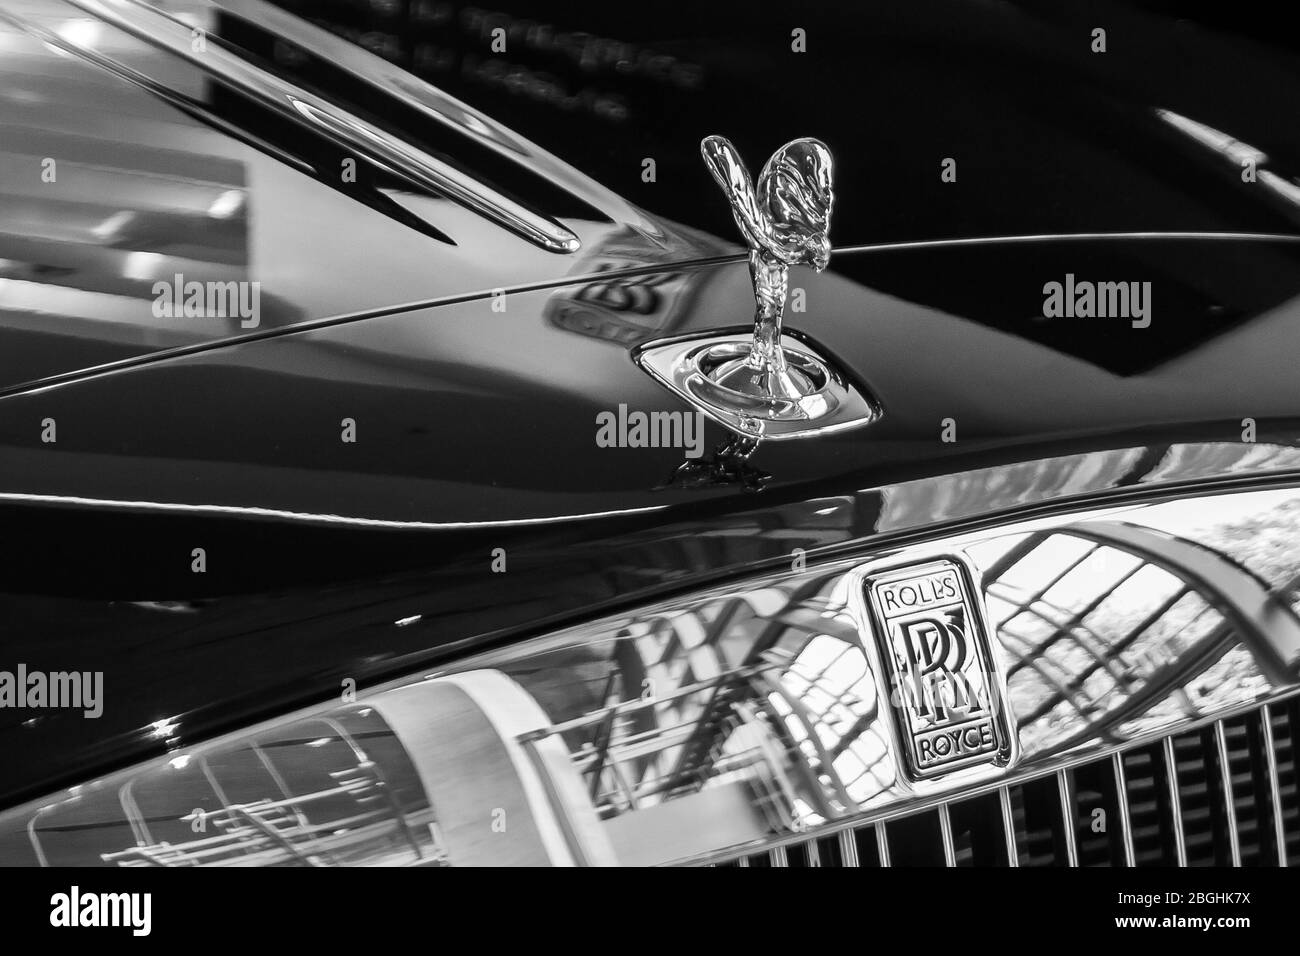 Rolls Royce, l'Esprit d'Ecstasy figure sur un capot .BMW Welt, Munich, Allemagne, mars 2020 Banque D'Images